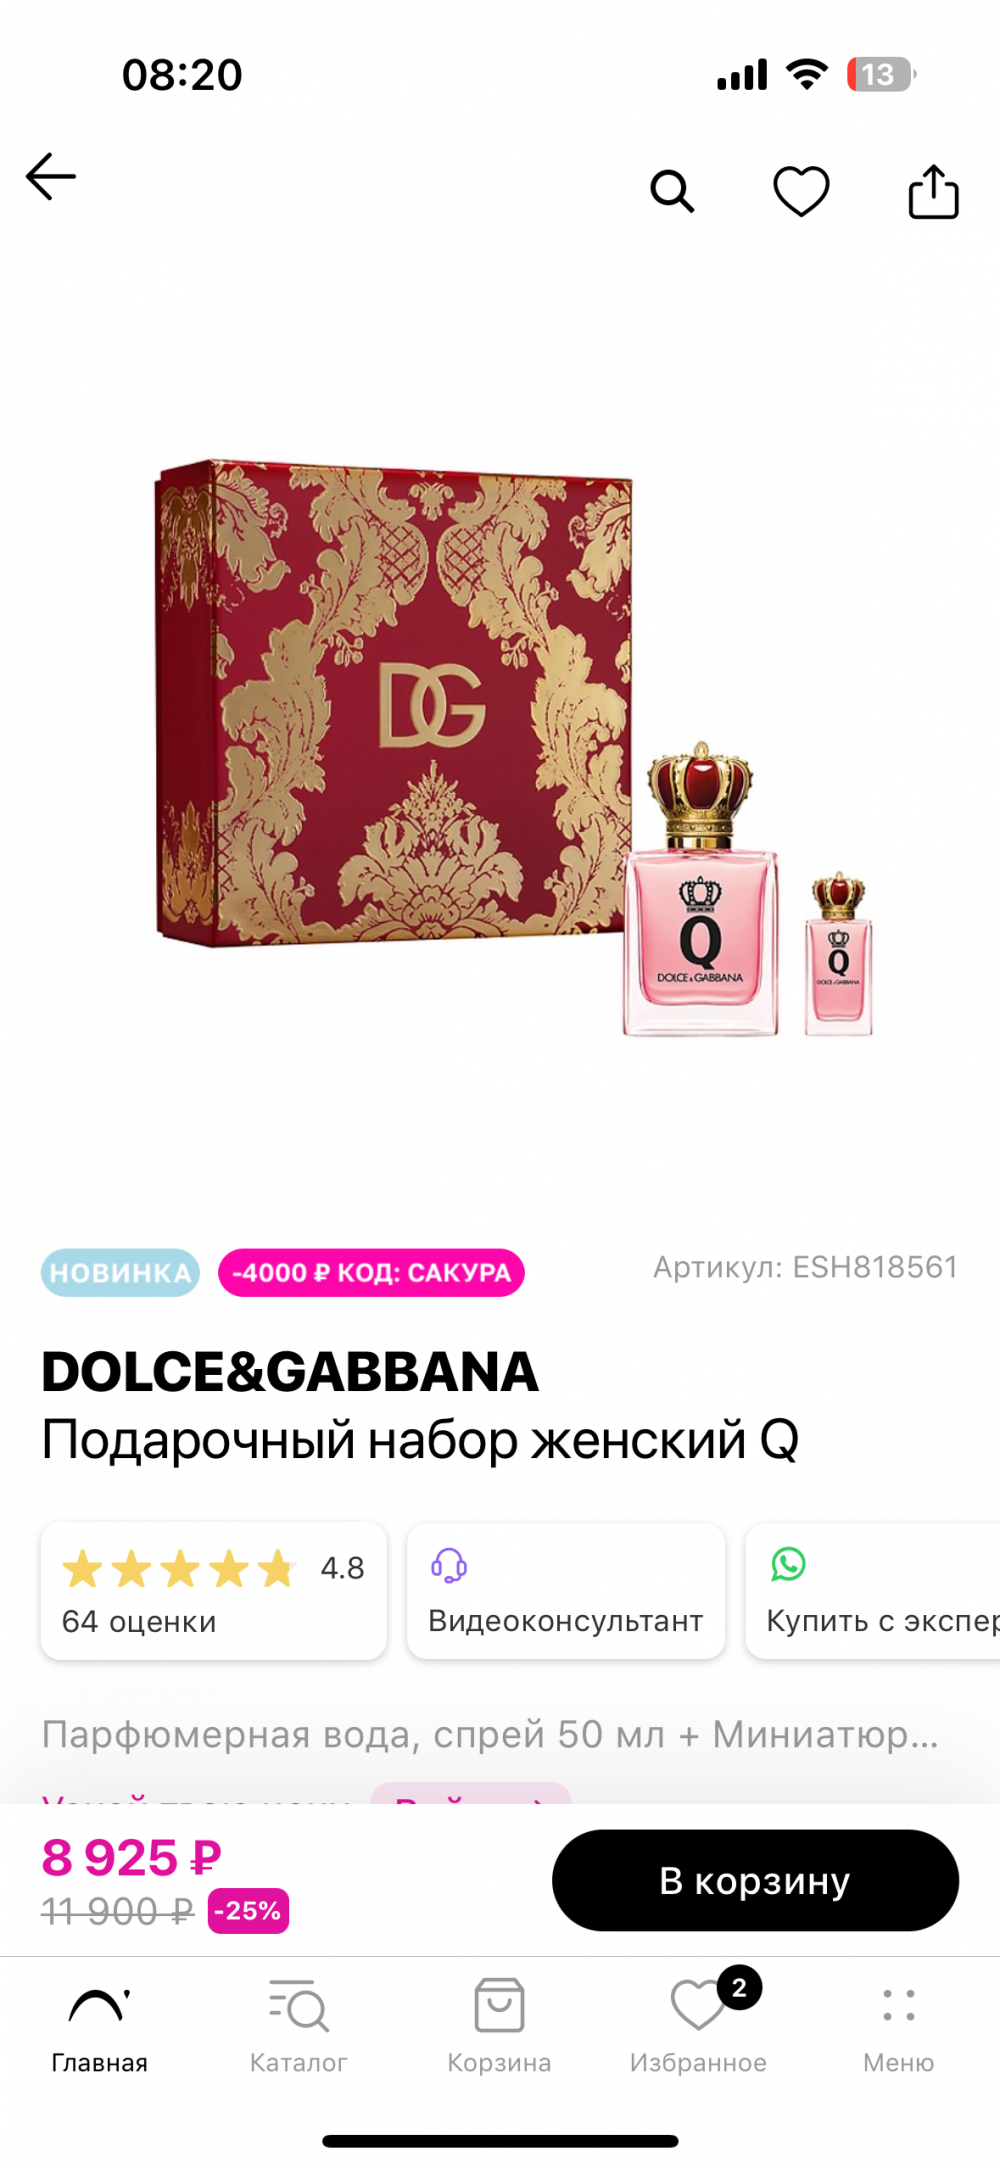 Q by Dolce & Gabbana парфюмерная вода 50 мл + 5 мл